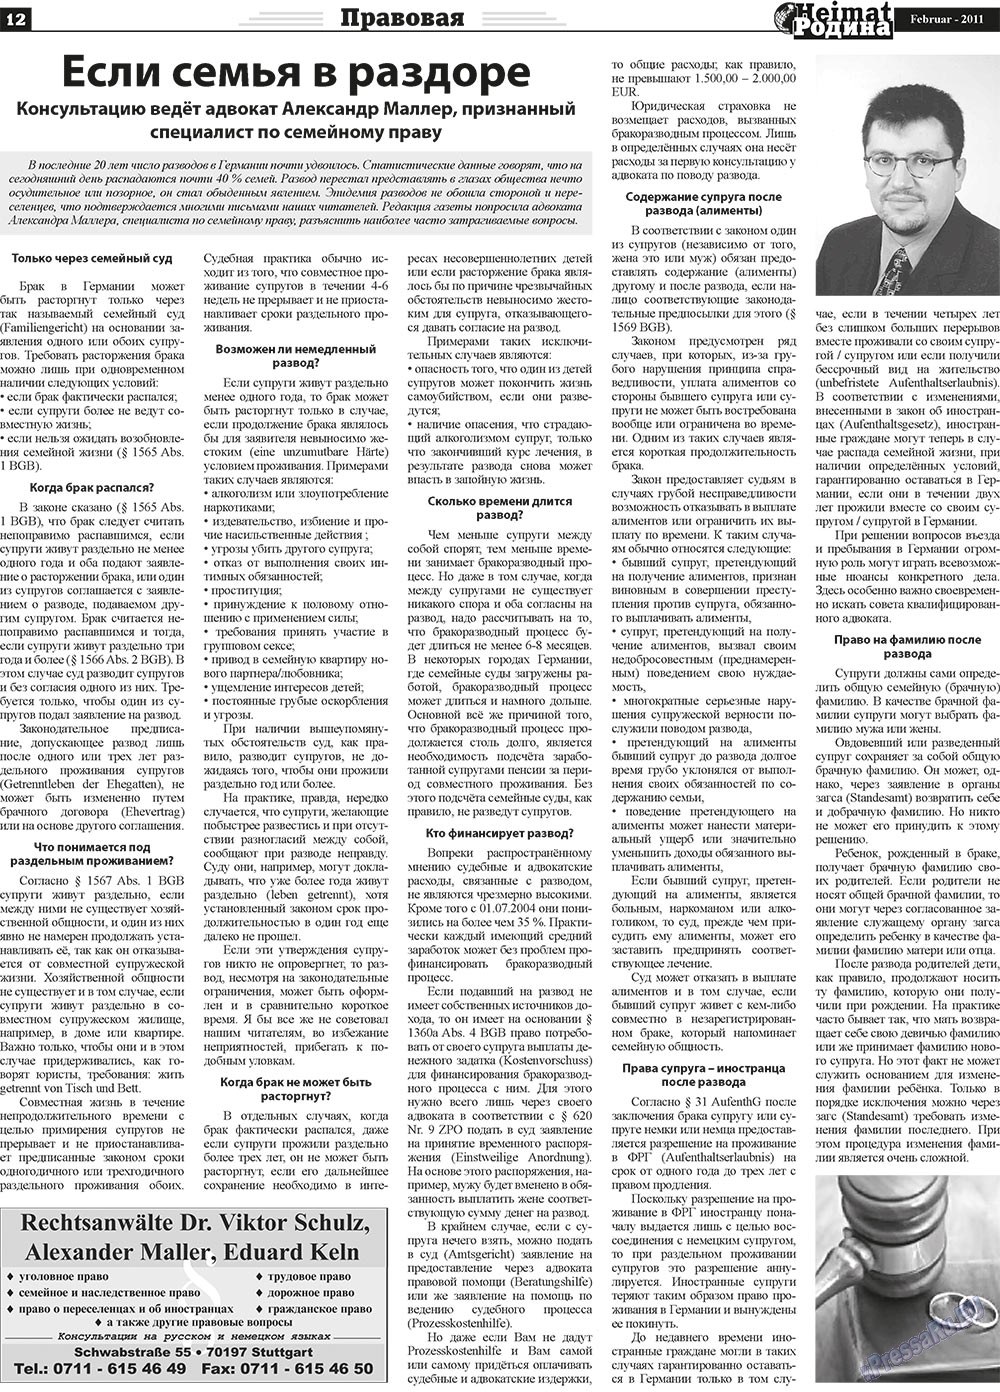 Heimat-Родина (Zeitung). 2011 Jahr, Ausgabe 2, Seite 12